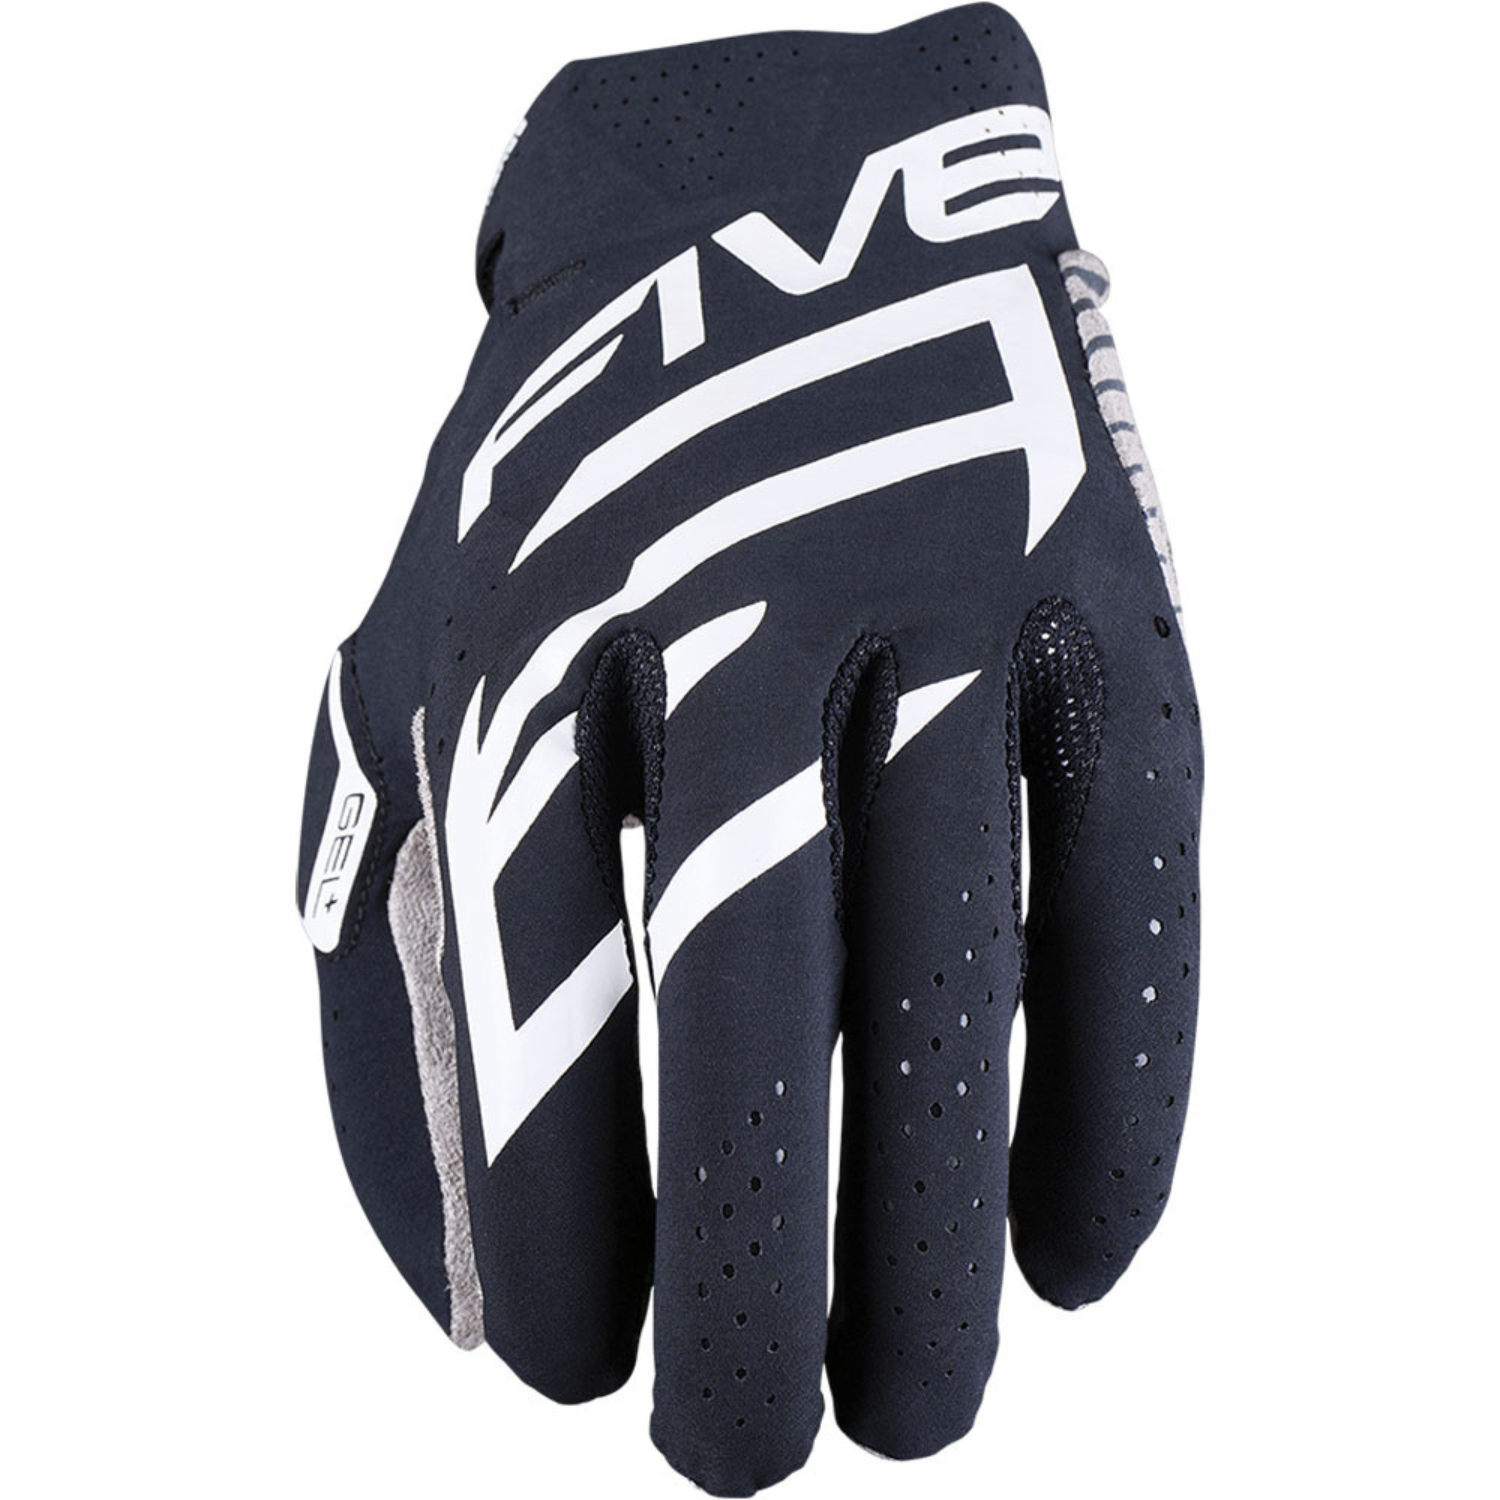 Five MXF Race Gloves Black White Size M